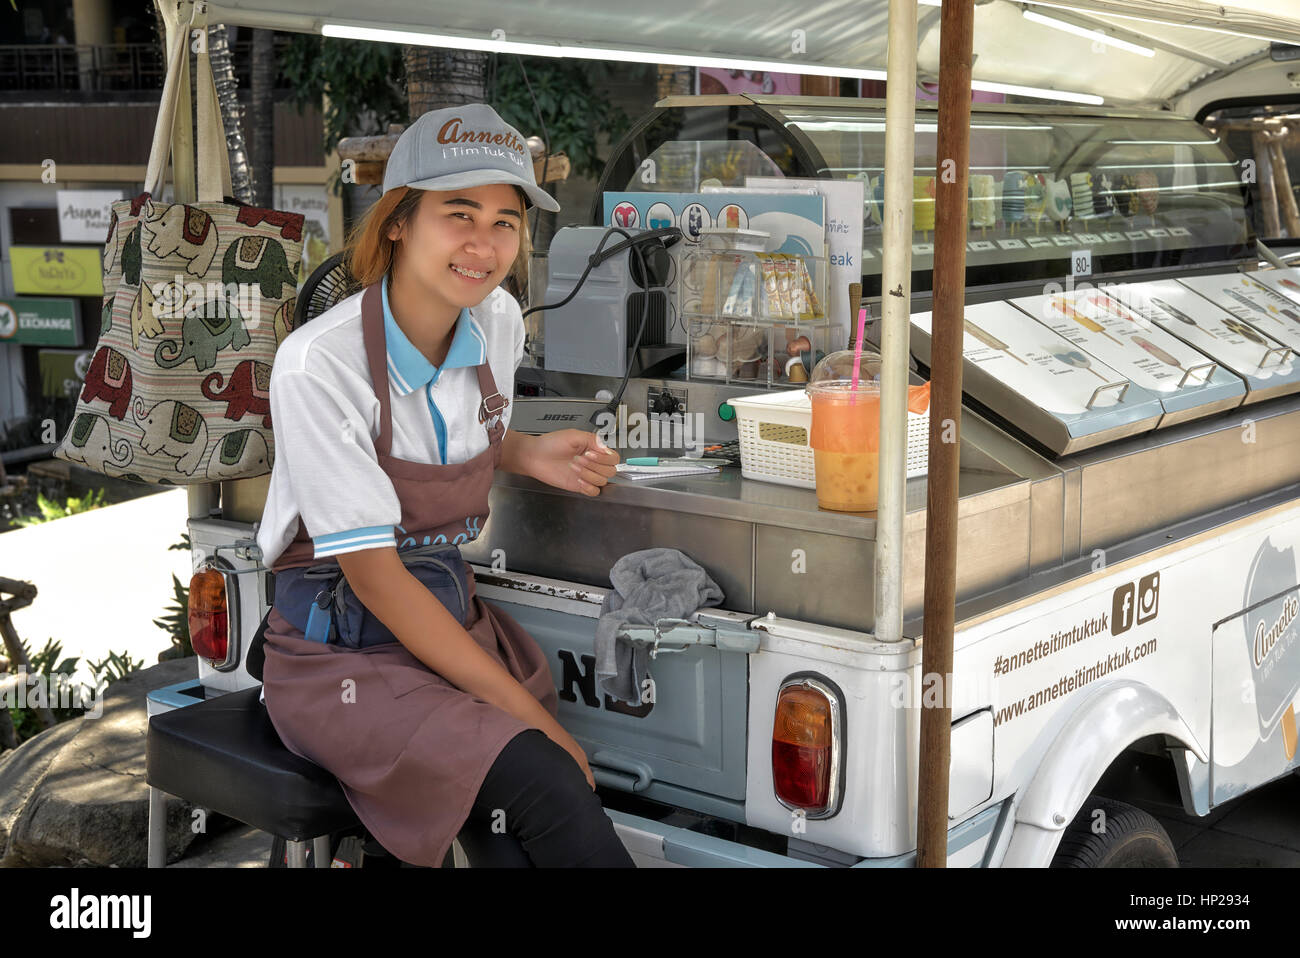 Vendeur de rue de Thaïlande. Jeune vendeur de glace thaï heureux et souriant chez sa vendeuse mobile Tuk Tuk Tuk. Pattaya Thaïlande Asie du Sud-est Banque D'Images